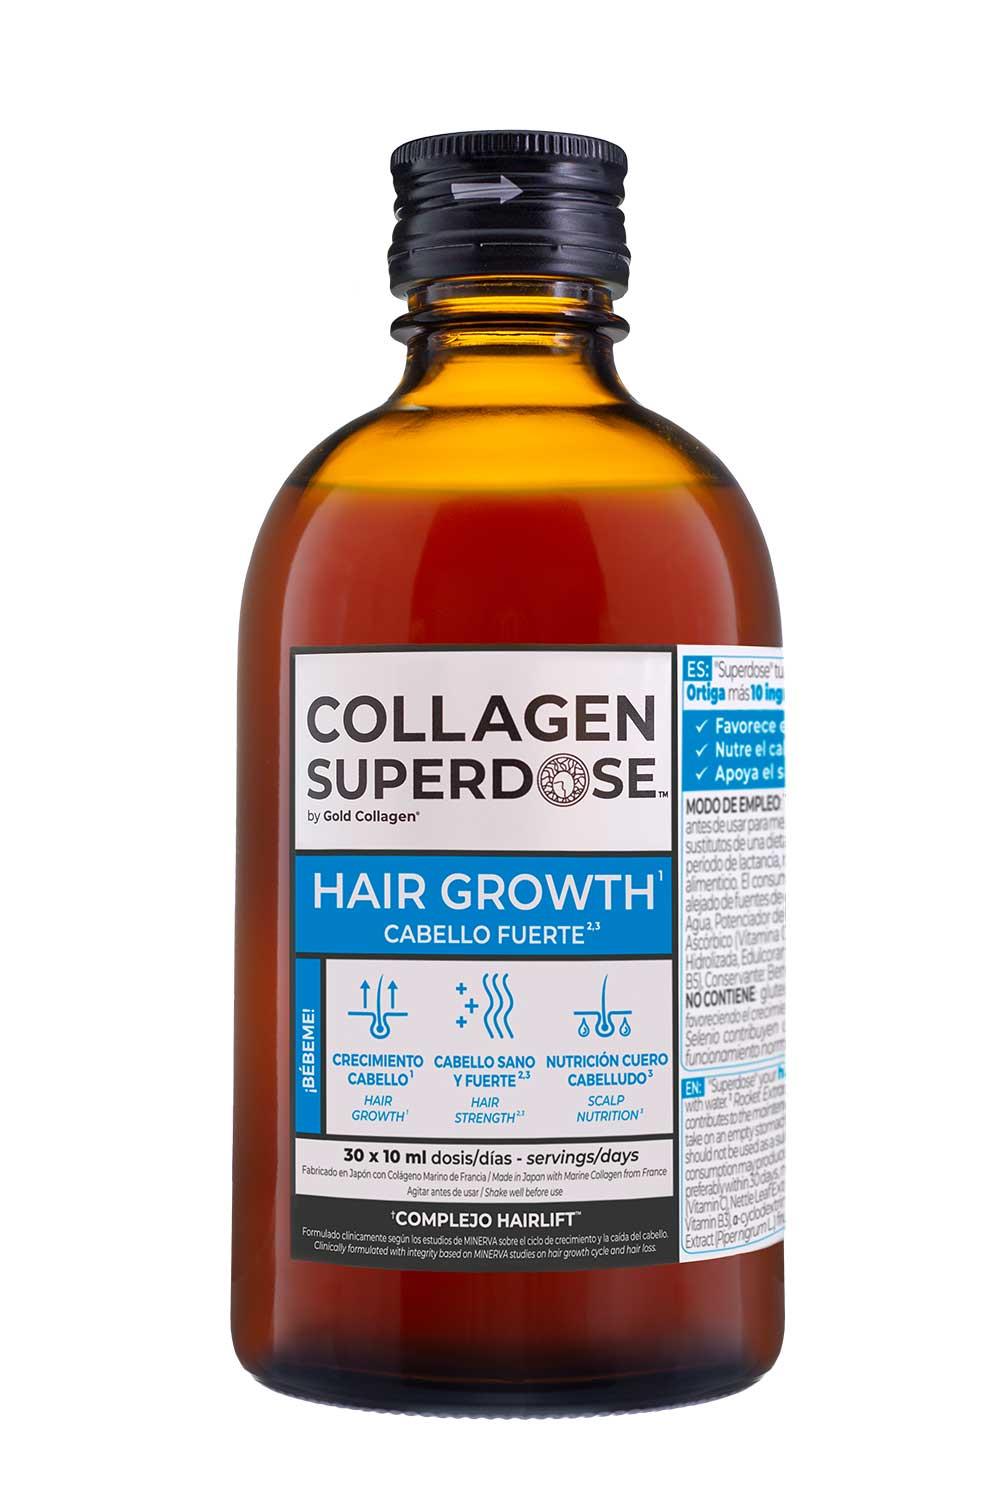 Collagensuper. Gold Collagen Superdose Hair Gowth